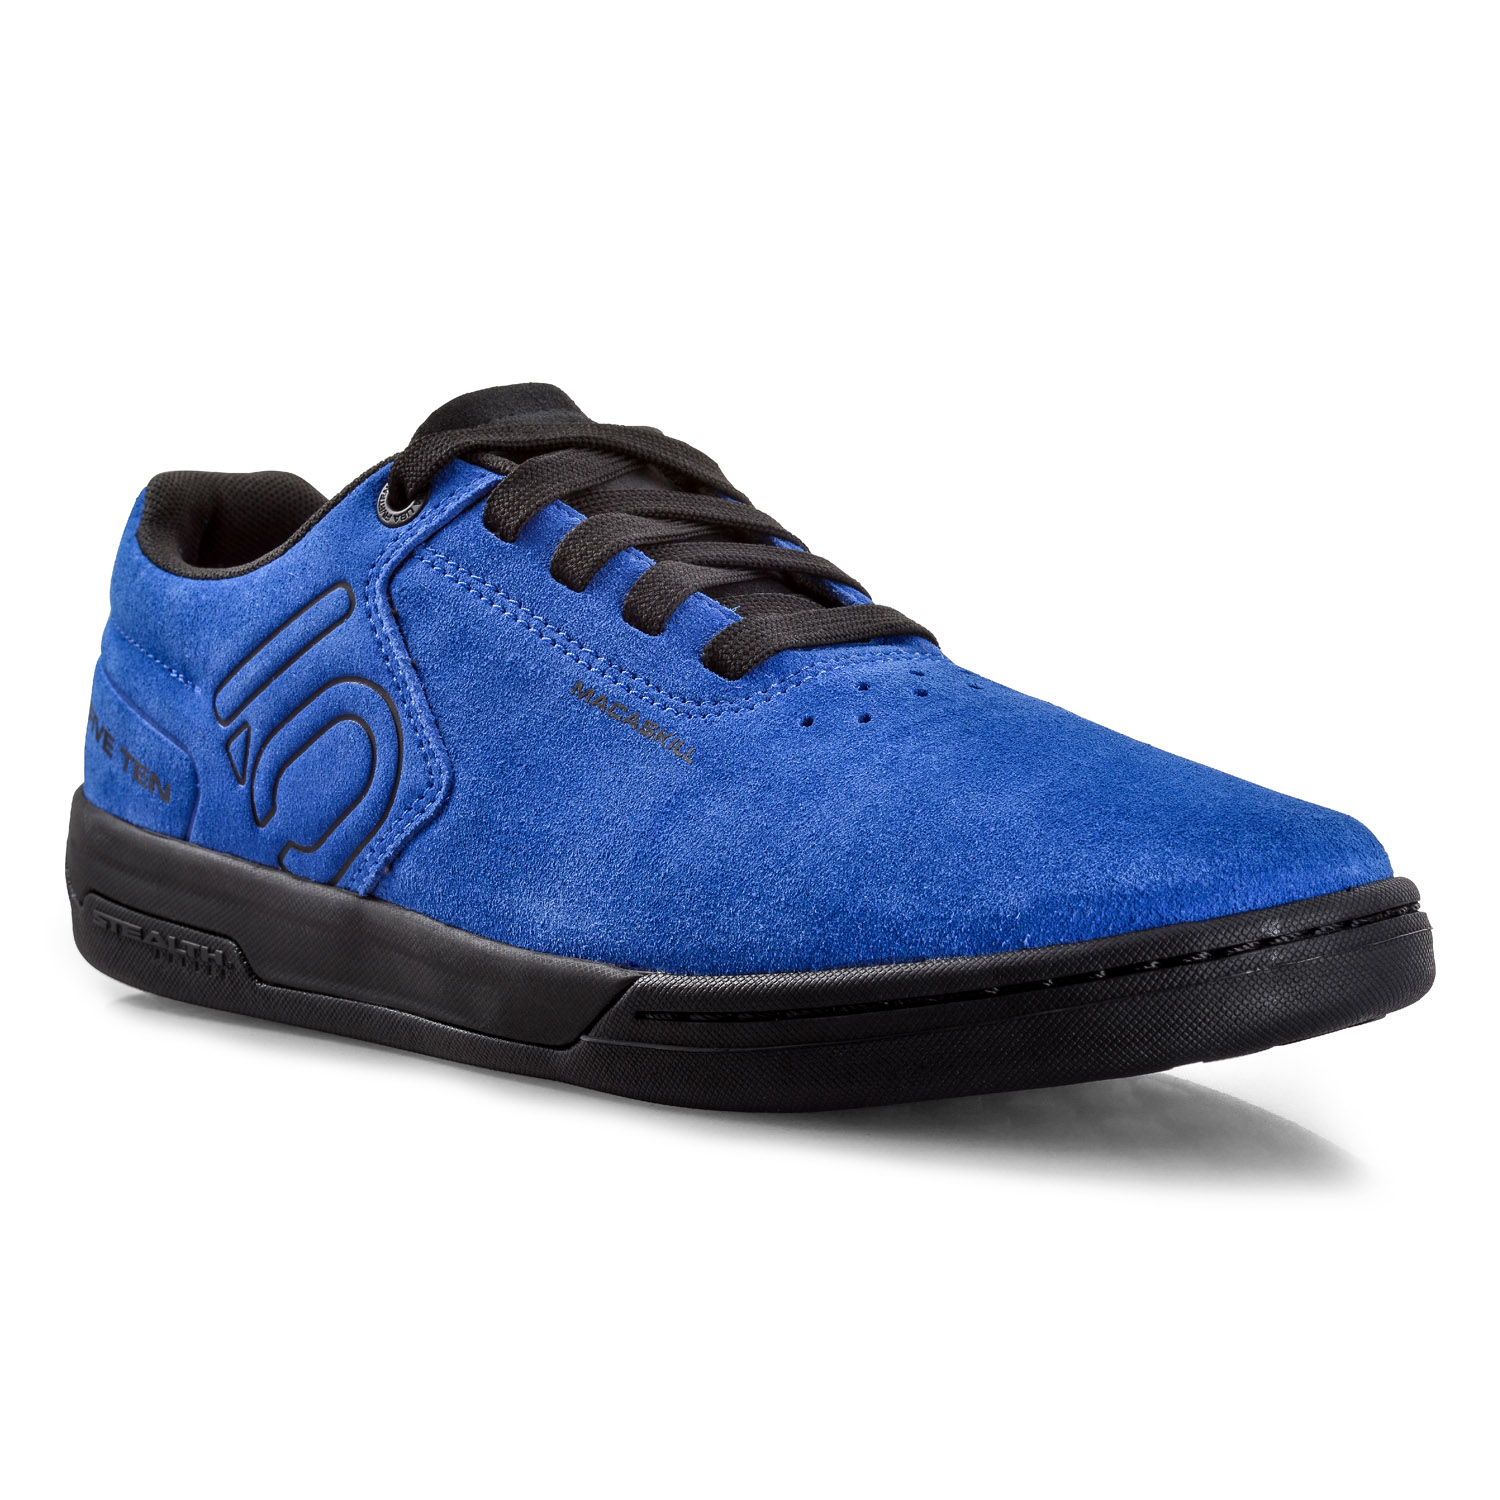 Five Ten Chaussures VTT Danny MacAskill Royal Blue